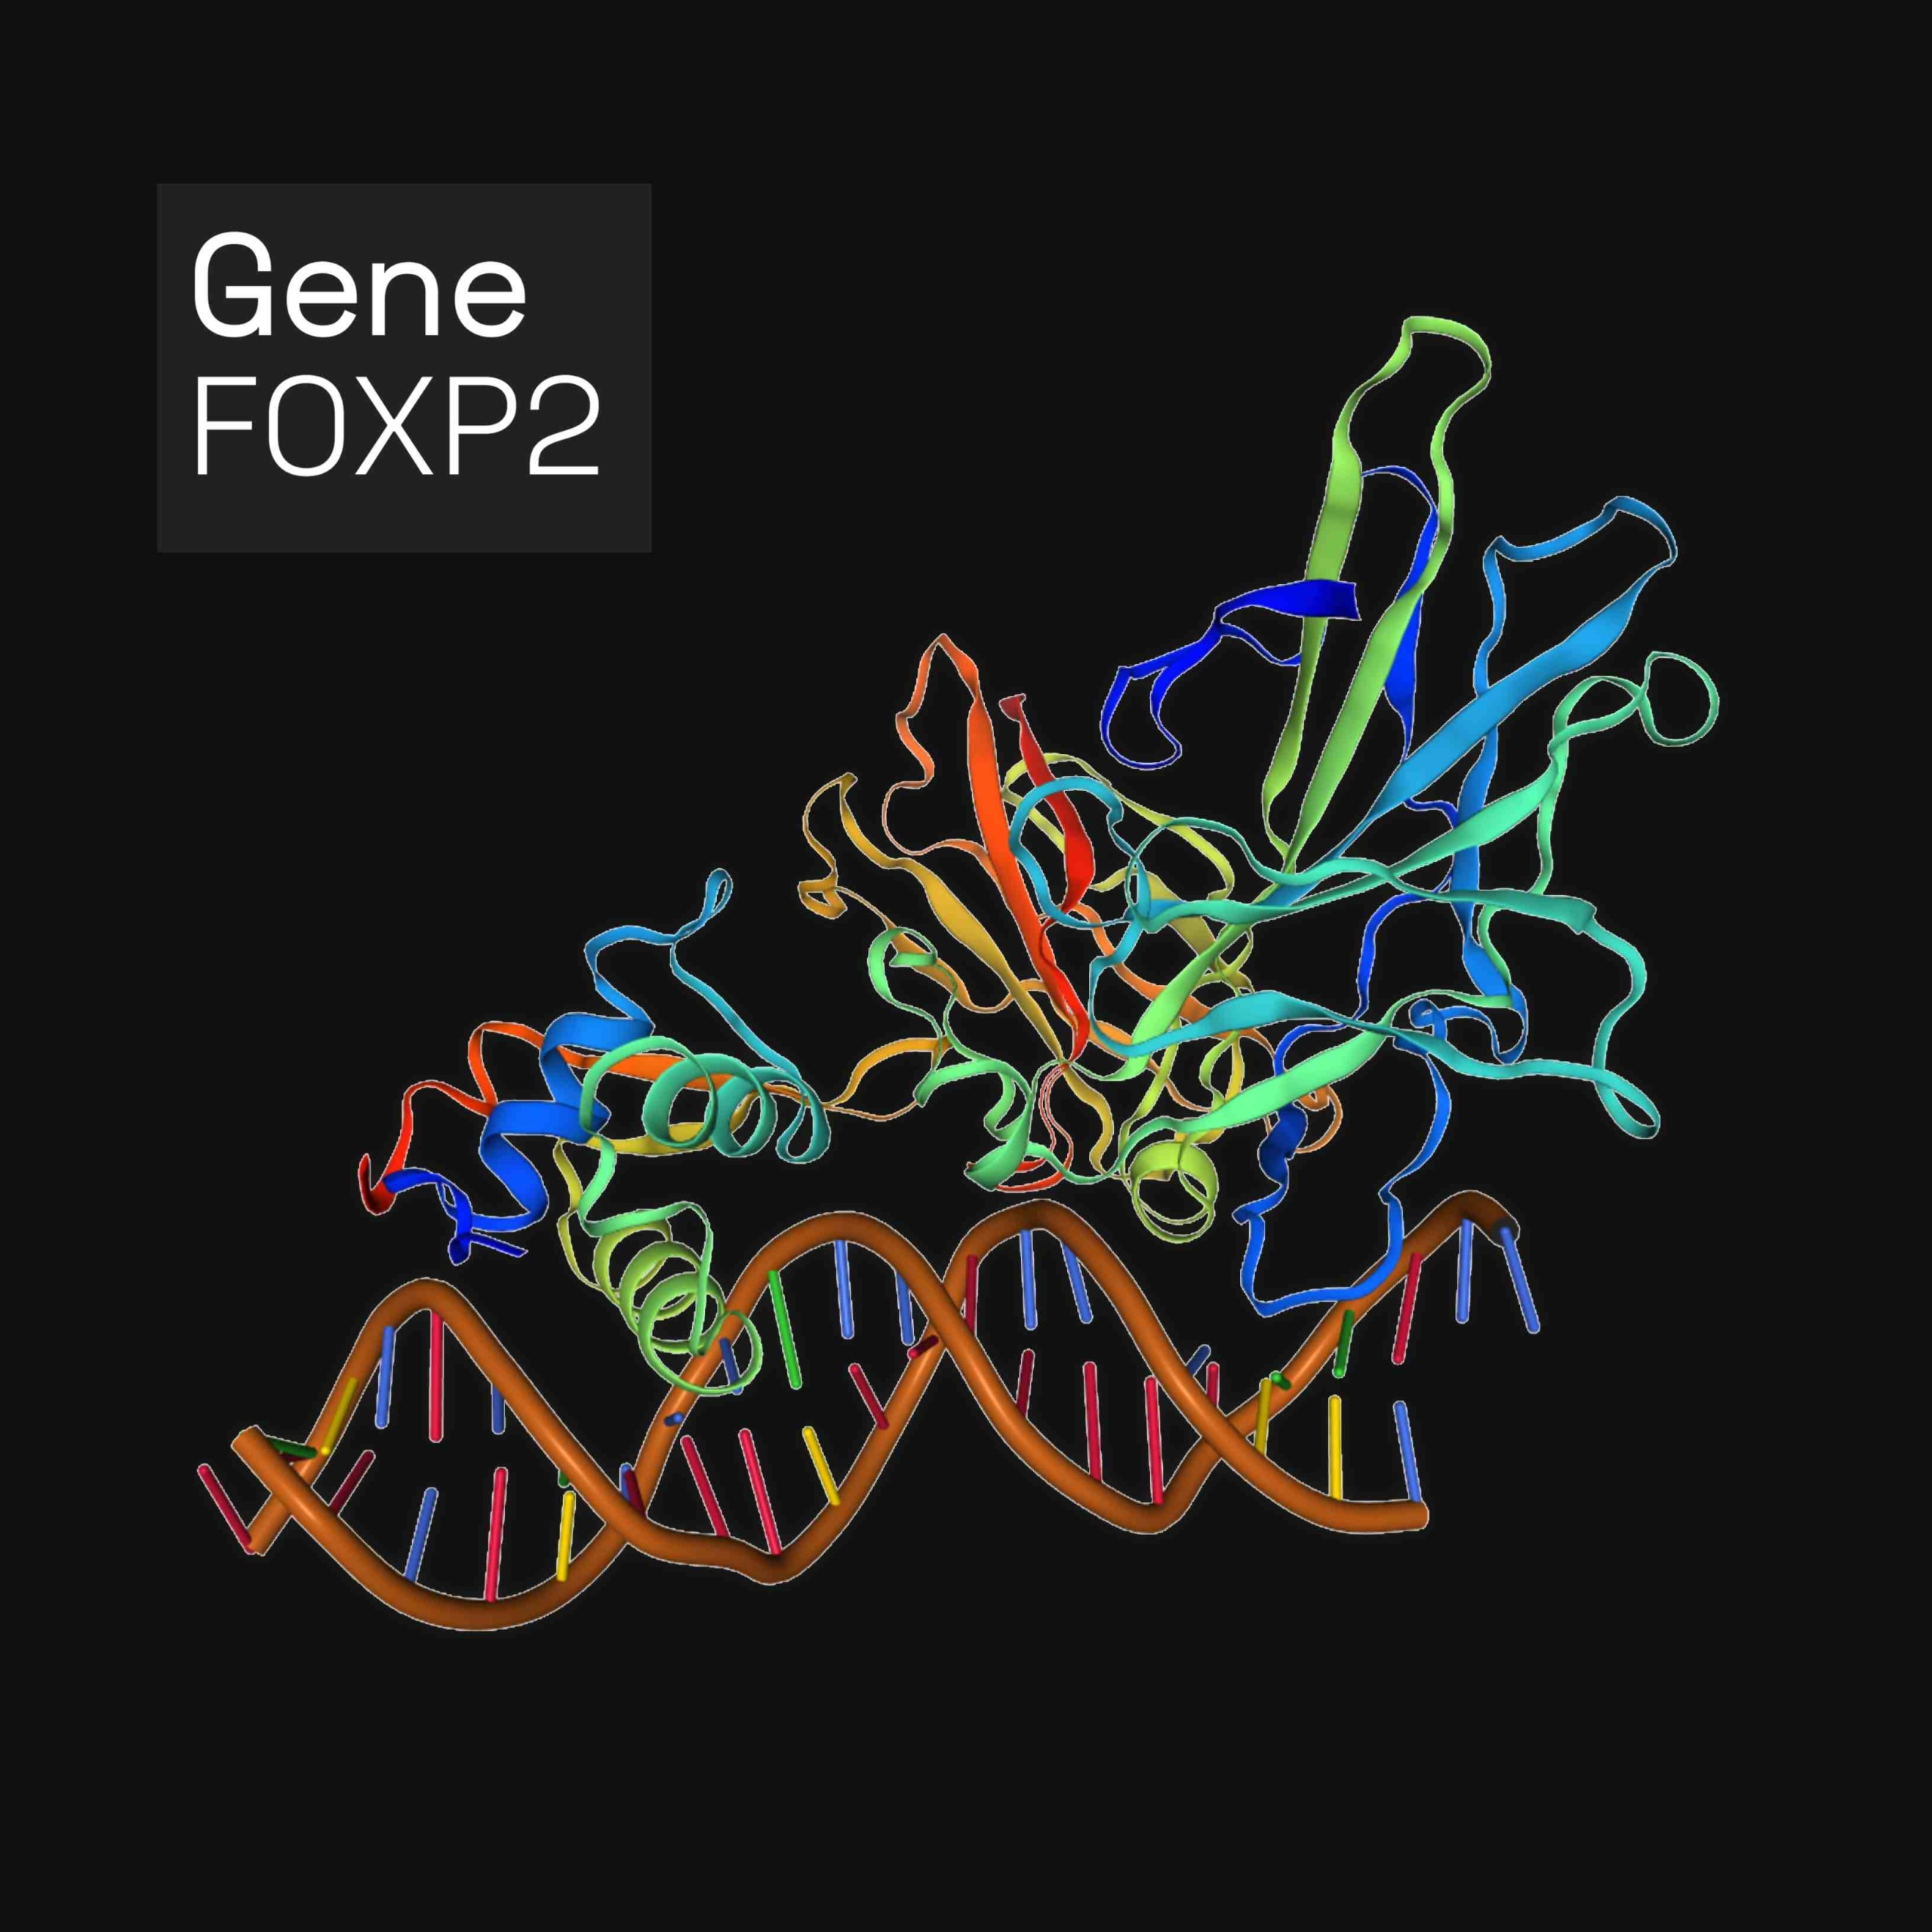 Forkhead box protein P2 (FOXP2) hija proteina li, fil-bnedmin, hija kkodifikata mill-ġene FOXP2. FOXP2 huwa membru tal-familja forkhead box ta 'fatturi ta' traskrizzjoni, proteini li jirregolaw l-espressjoni tal-ġeni billi jorbtu mad-DNA. Huwa espress fil-moħħ, il-qalb, il-pulmuni u s-sistema diġestiva.